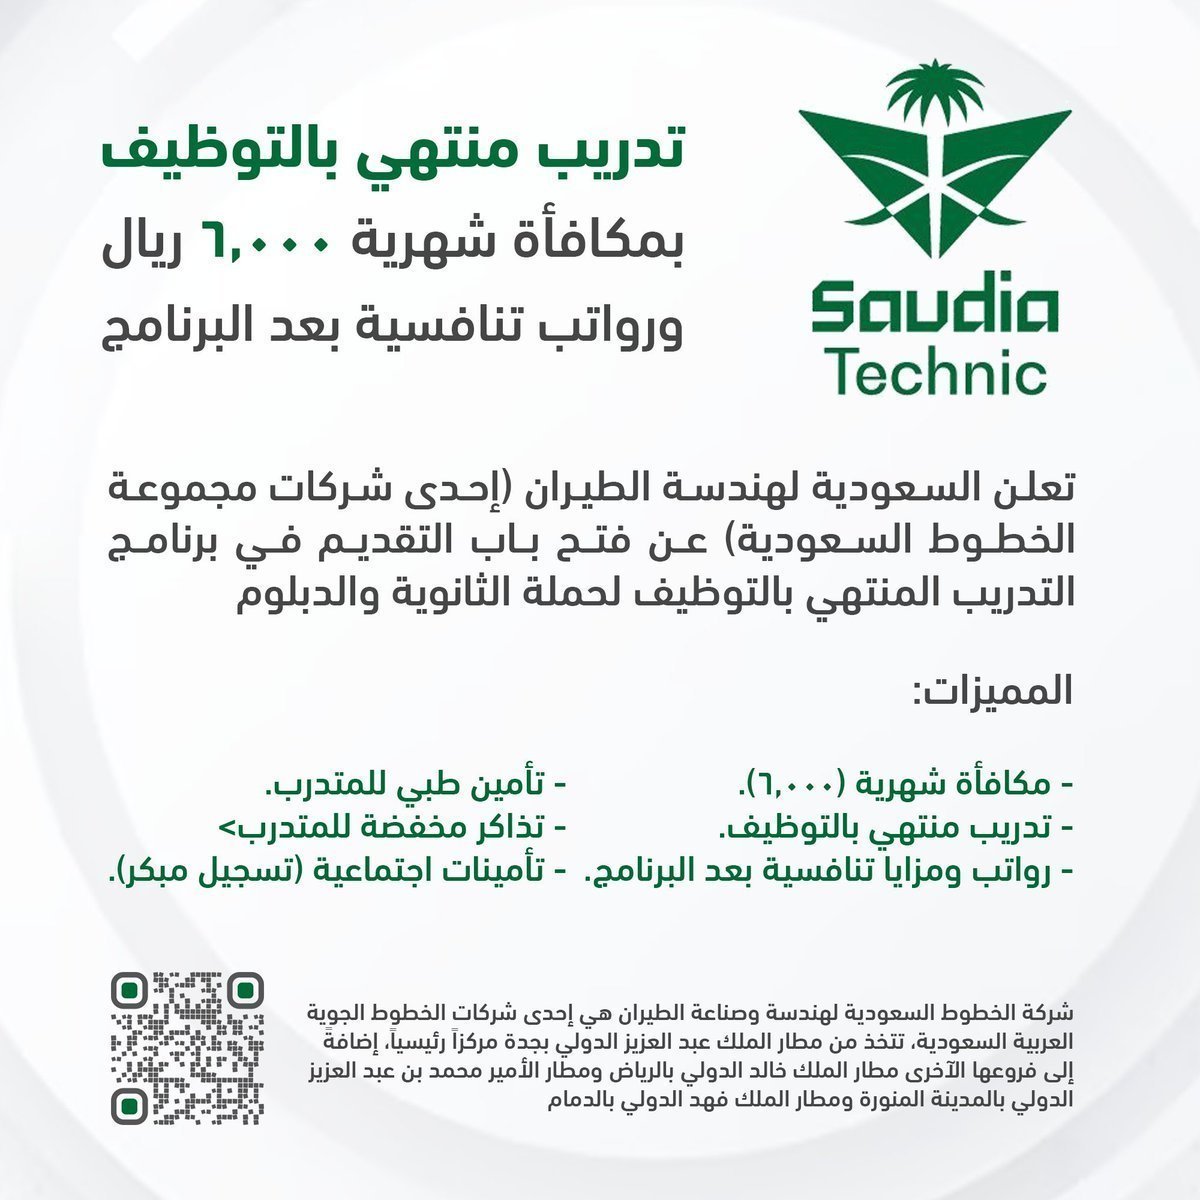 🟢 تدريب منتهي بالتوظيف (لحملة الثانوية فأعلى):  

السعودية لهندسة الطيران (إحدى شركات مجموعة #الخطوط_السعودية ) تعلن برنامج التدريب المنتهي بالتوظيف لحملة الثانوية والدبلوم، بمكافأة شهرية (6,000)، ورواتب مع مزايا تنافسية بعد البرنامج.

التفاصيل: wadhefa.com/news/16640/

#وظائف